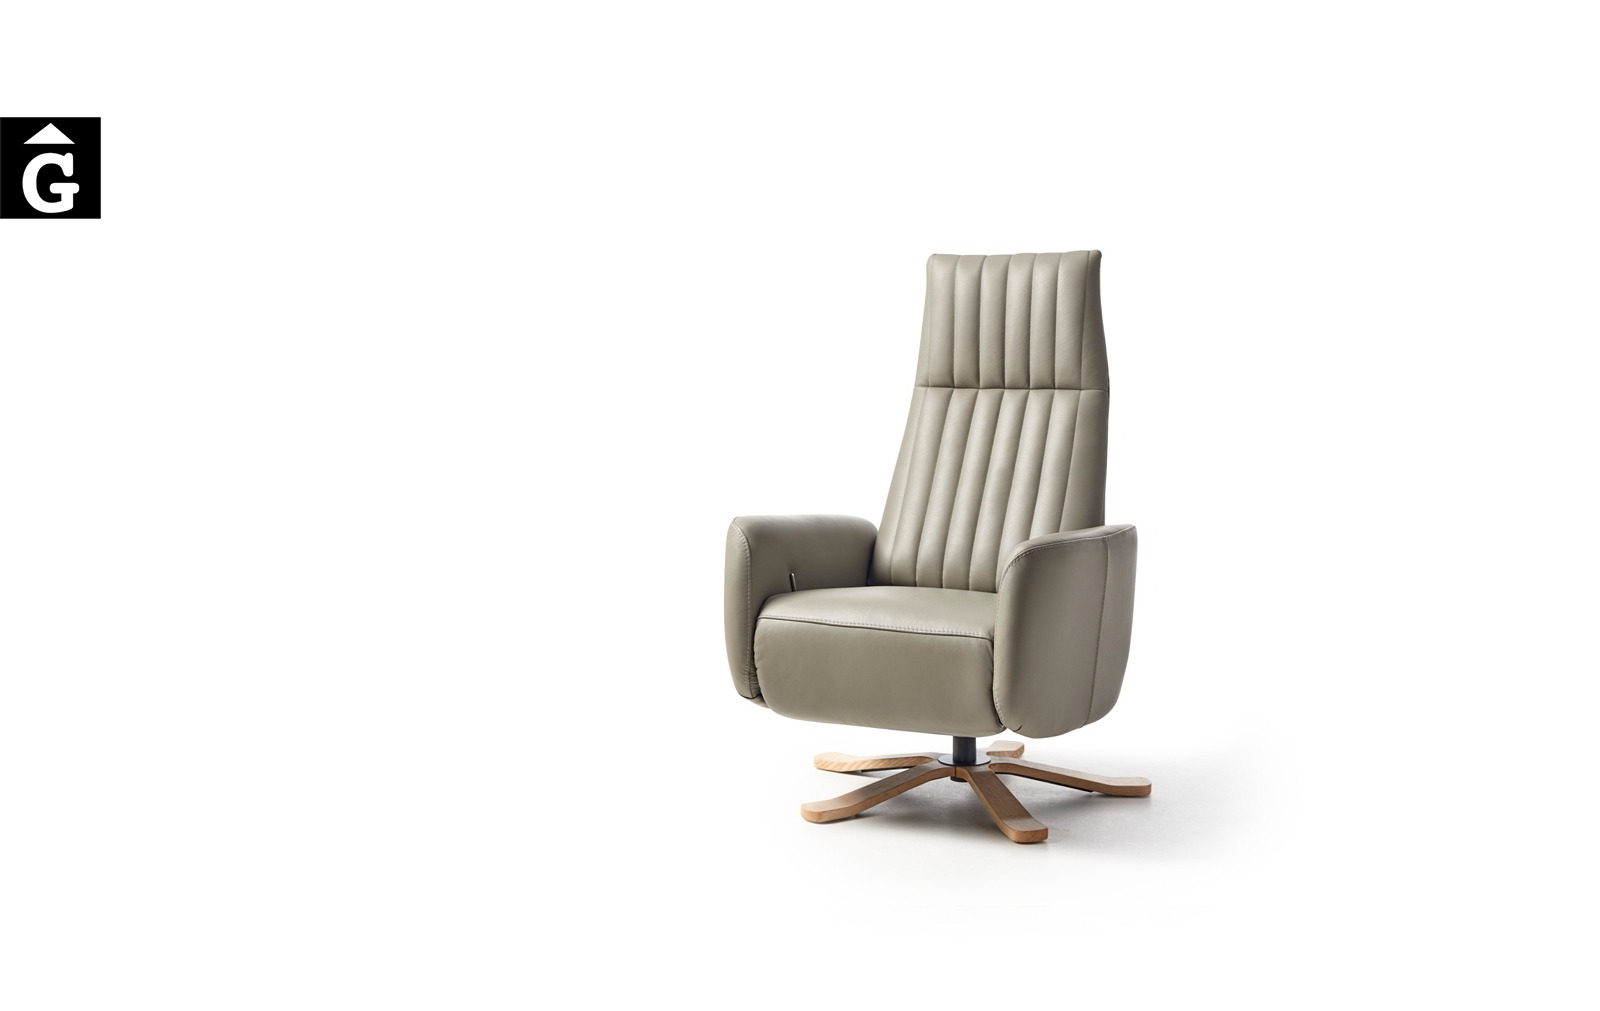 Butaca relax Tempo | Peu central fusta | Vista perfil | Reyes Ordoñez Sofas disseny i qualitat alta distribuïdor oficial mobles Gifreu